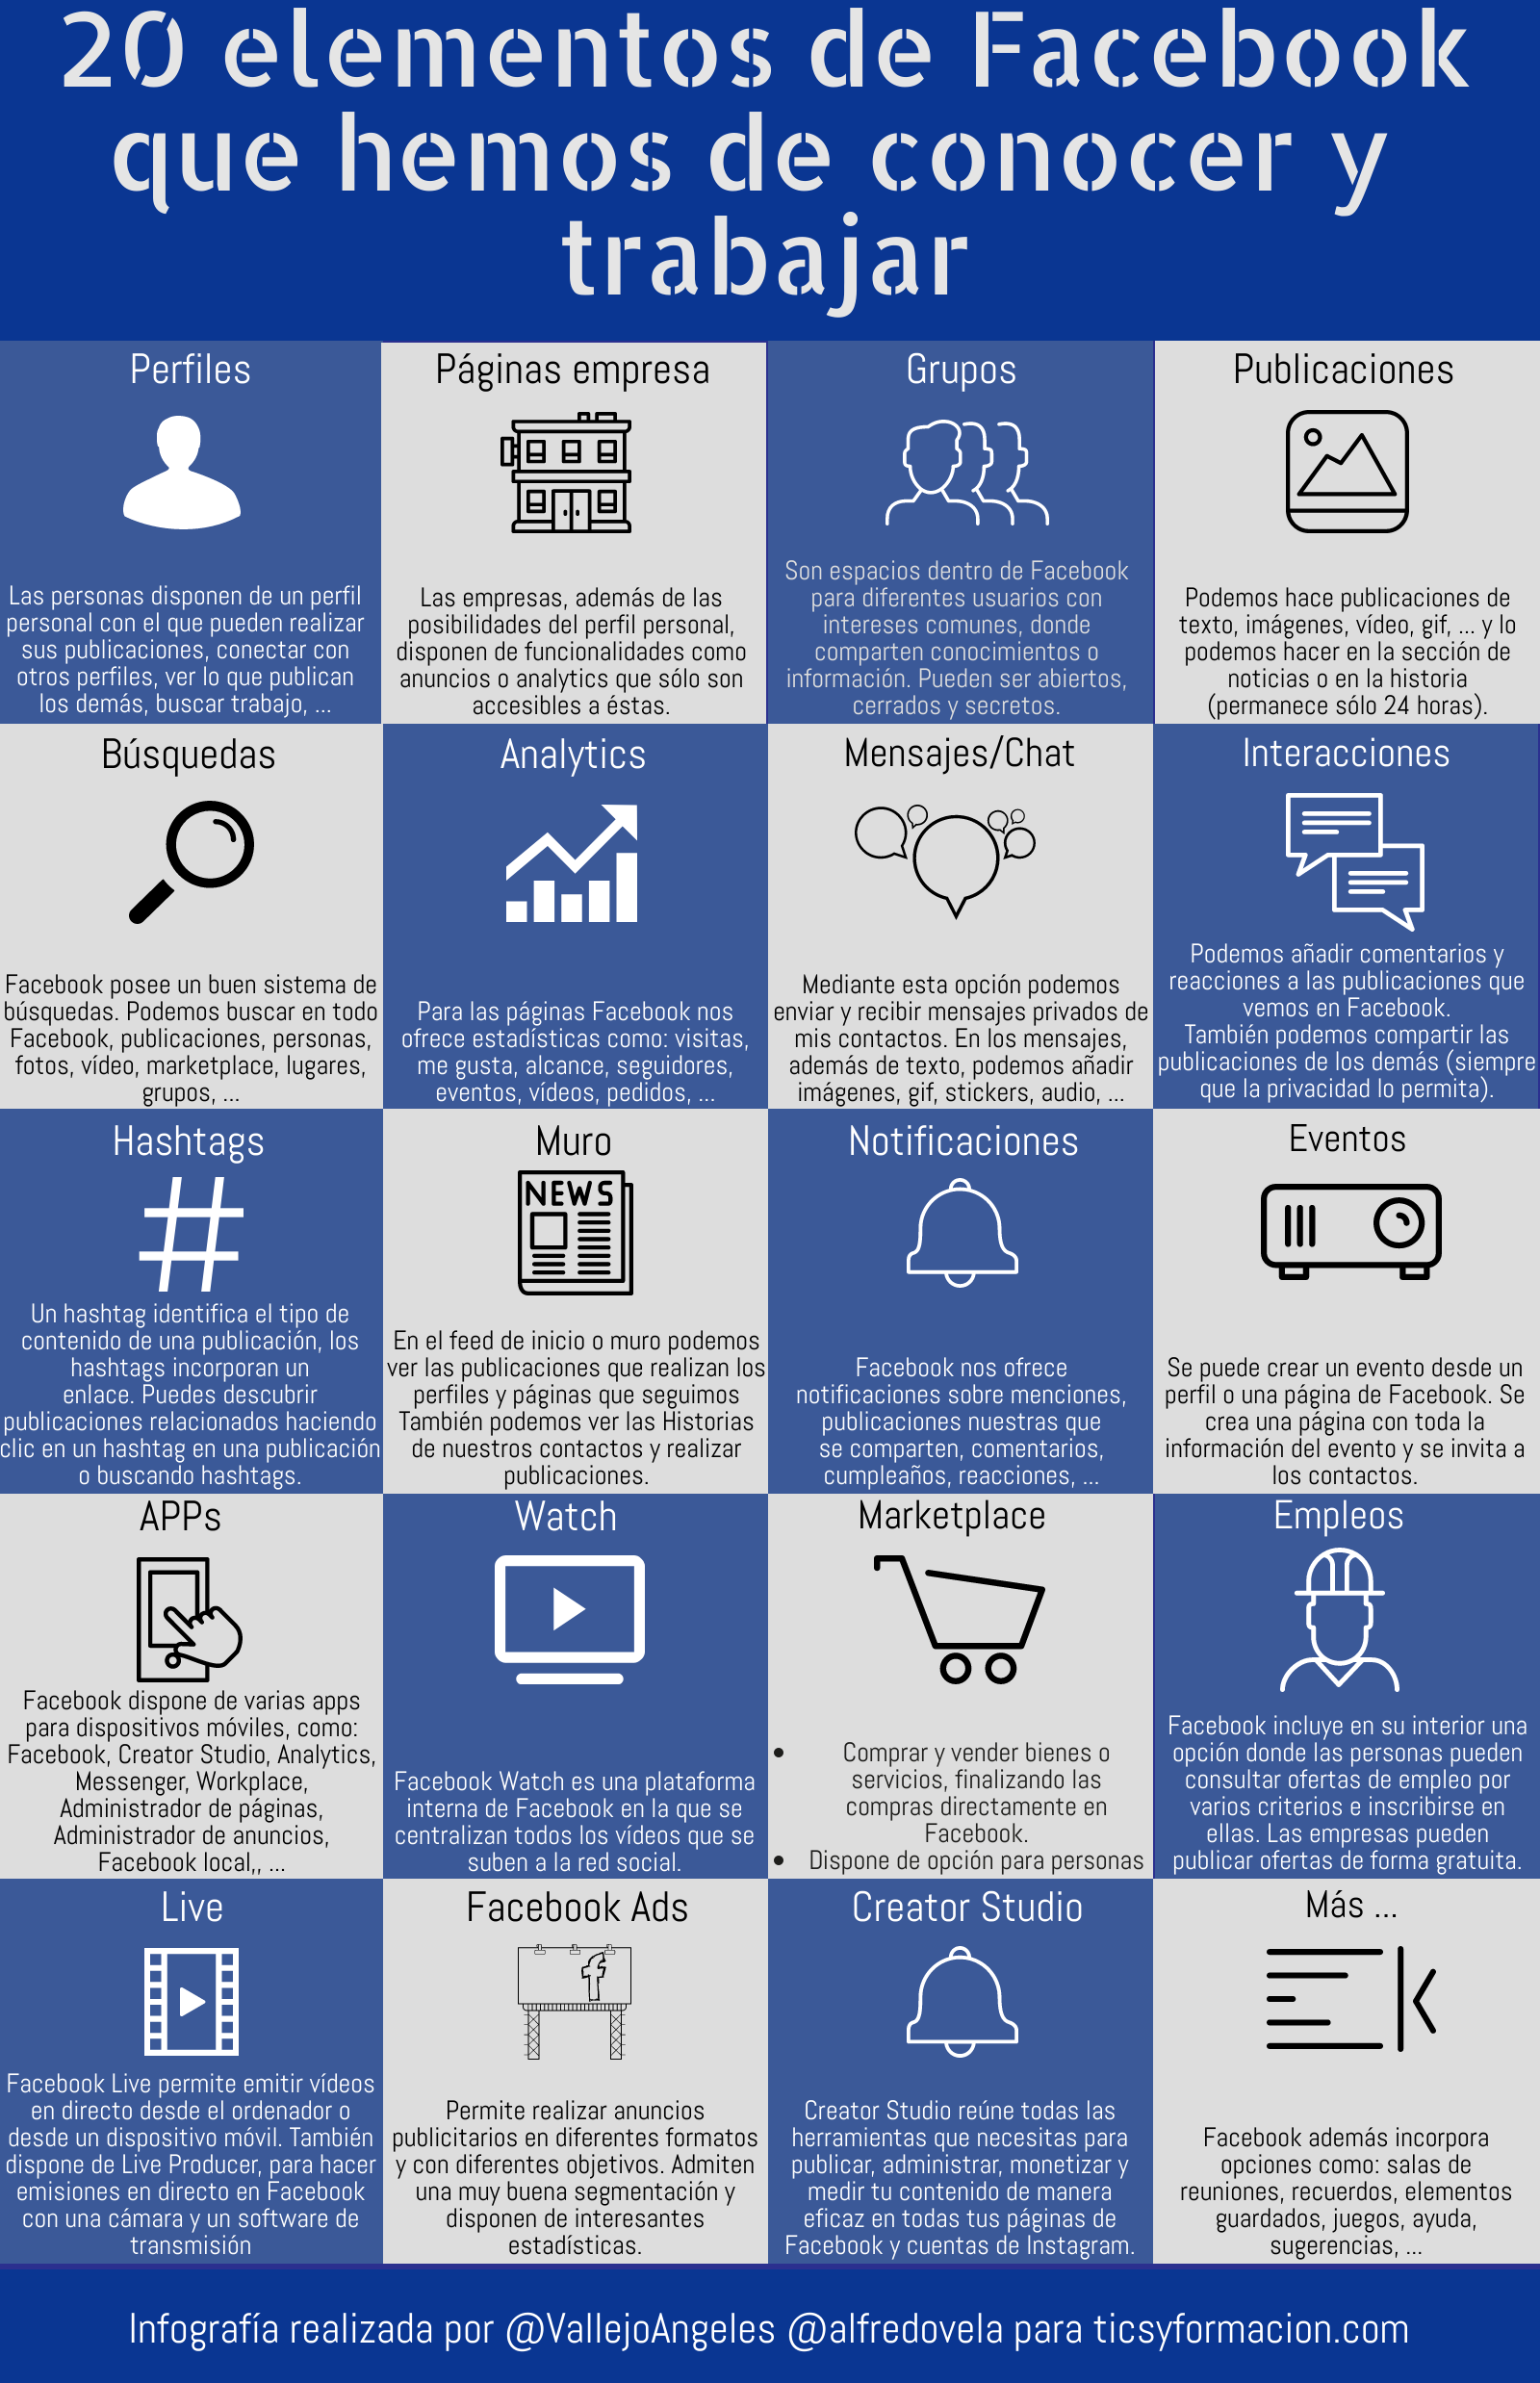 20 elementos de Facebook que hemos de conocer y trabajar #infografia #communitymanager #socialmedia